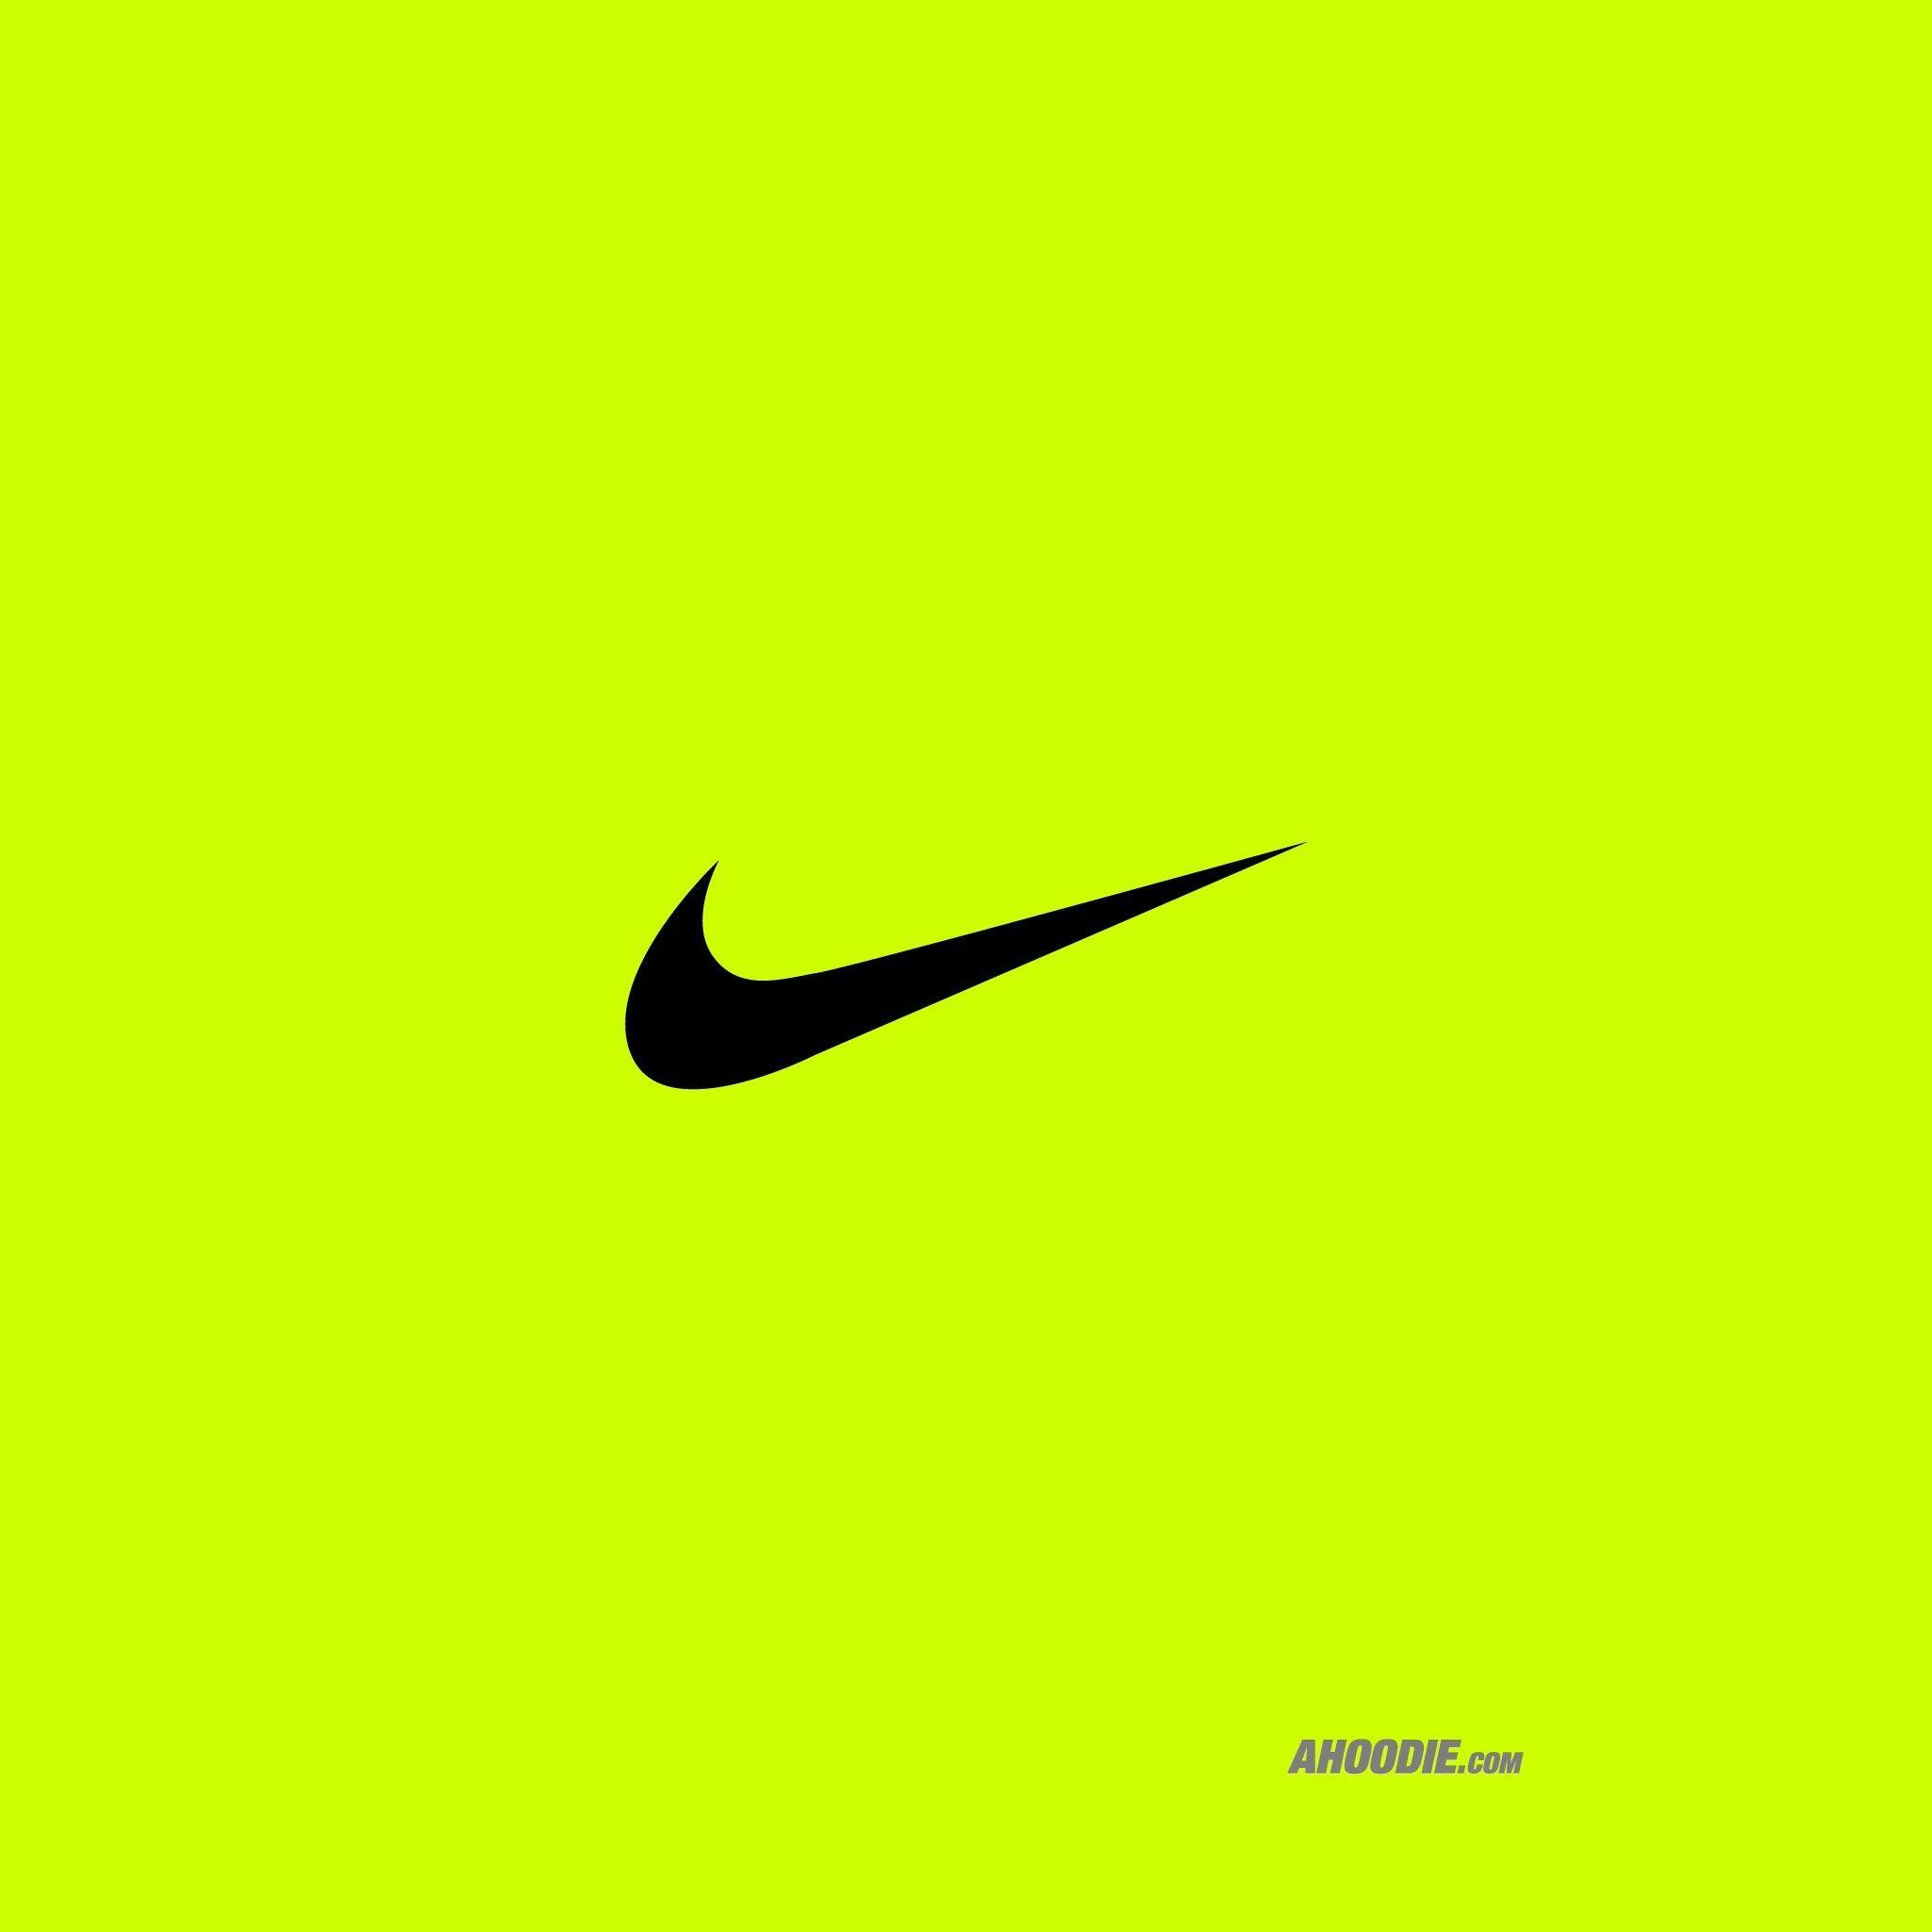 Hình nền  Nike hình minh họa Logo hoạt hình thiết kế đồ họa Adidas  áp phích nhãn hiệu Quảng cáo Hình nền máy tính 1920x1080  RaidyHD   126957  Hình nền đẹp hd  WallHere